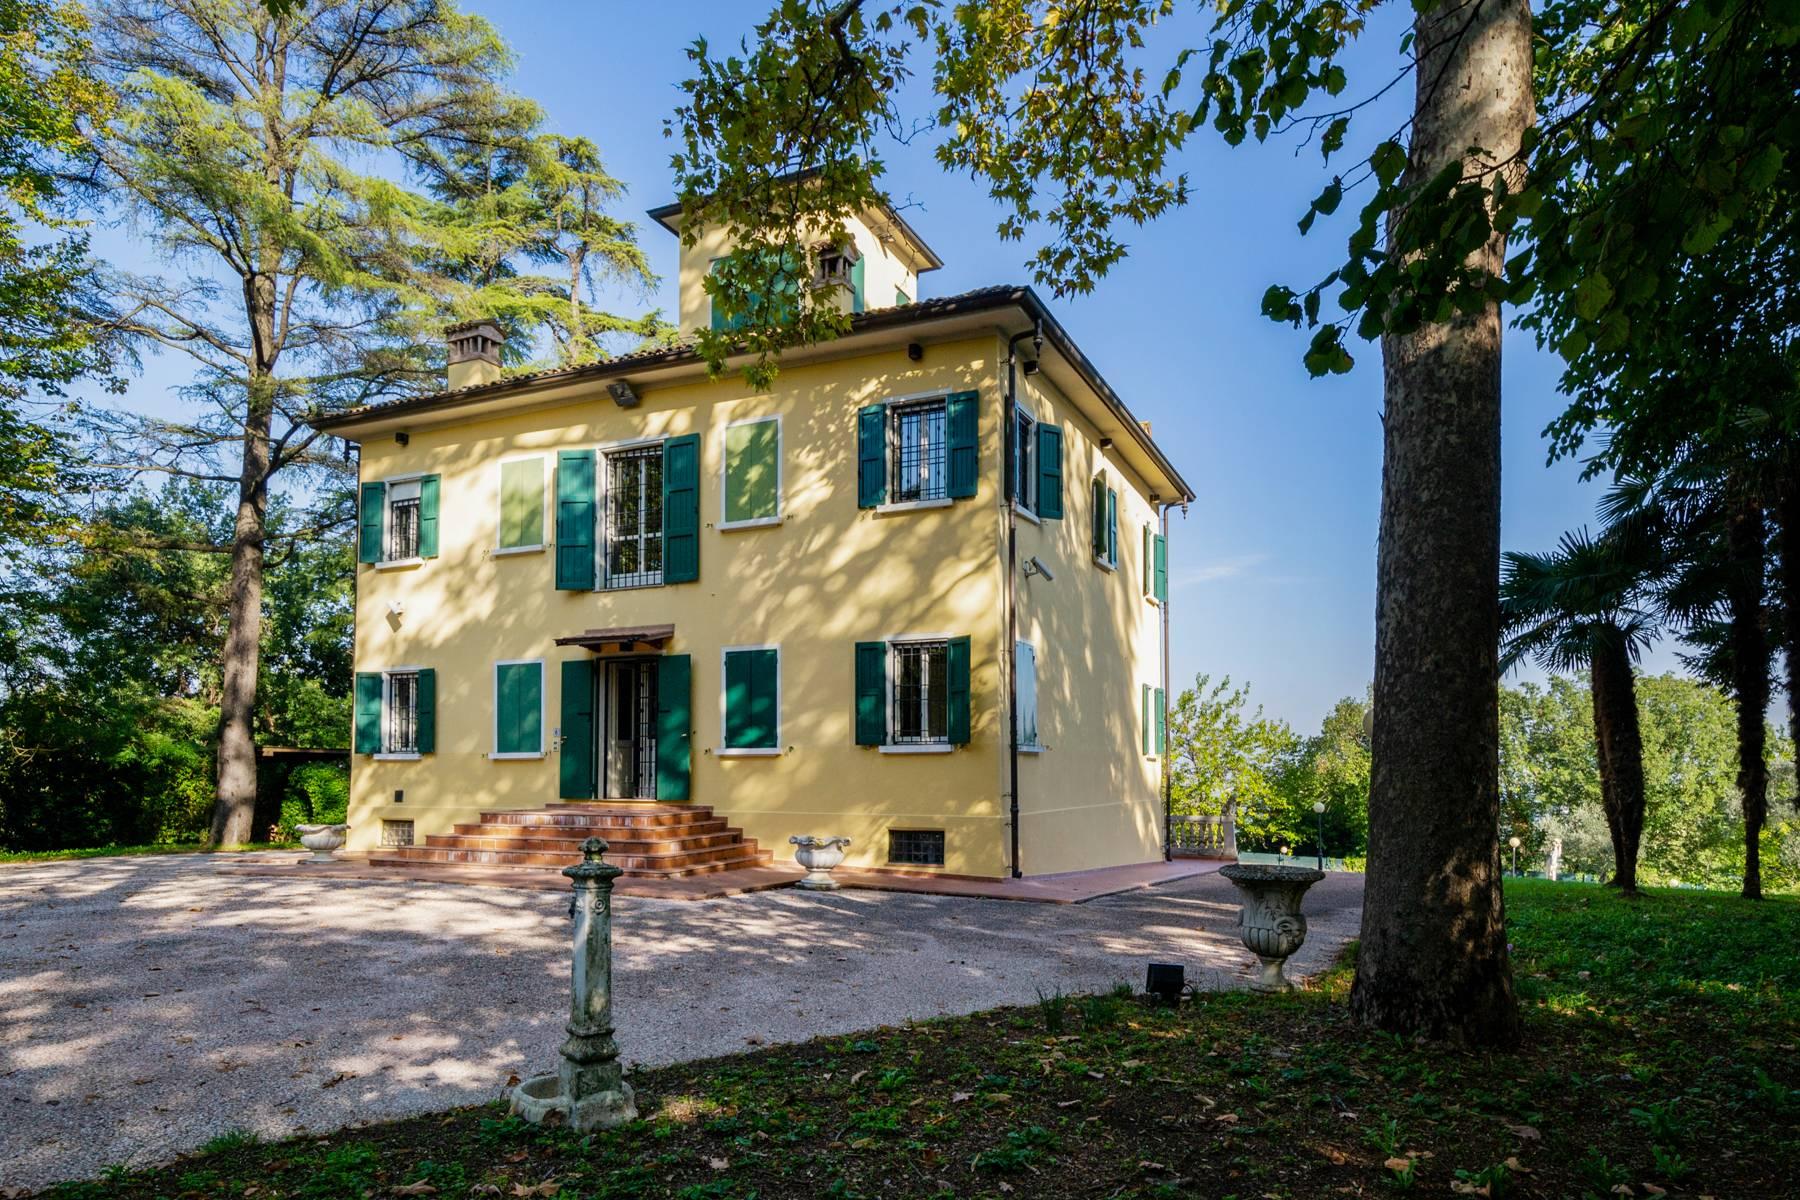 Historische Villa vom Grünen umgeben - 2